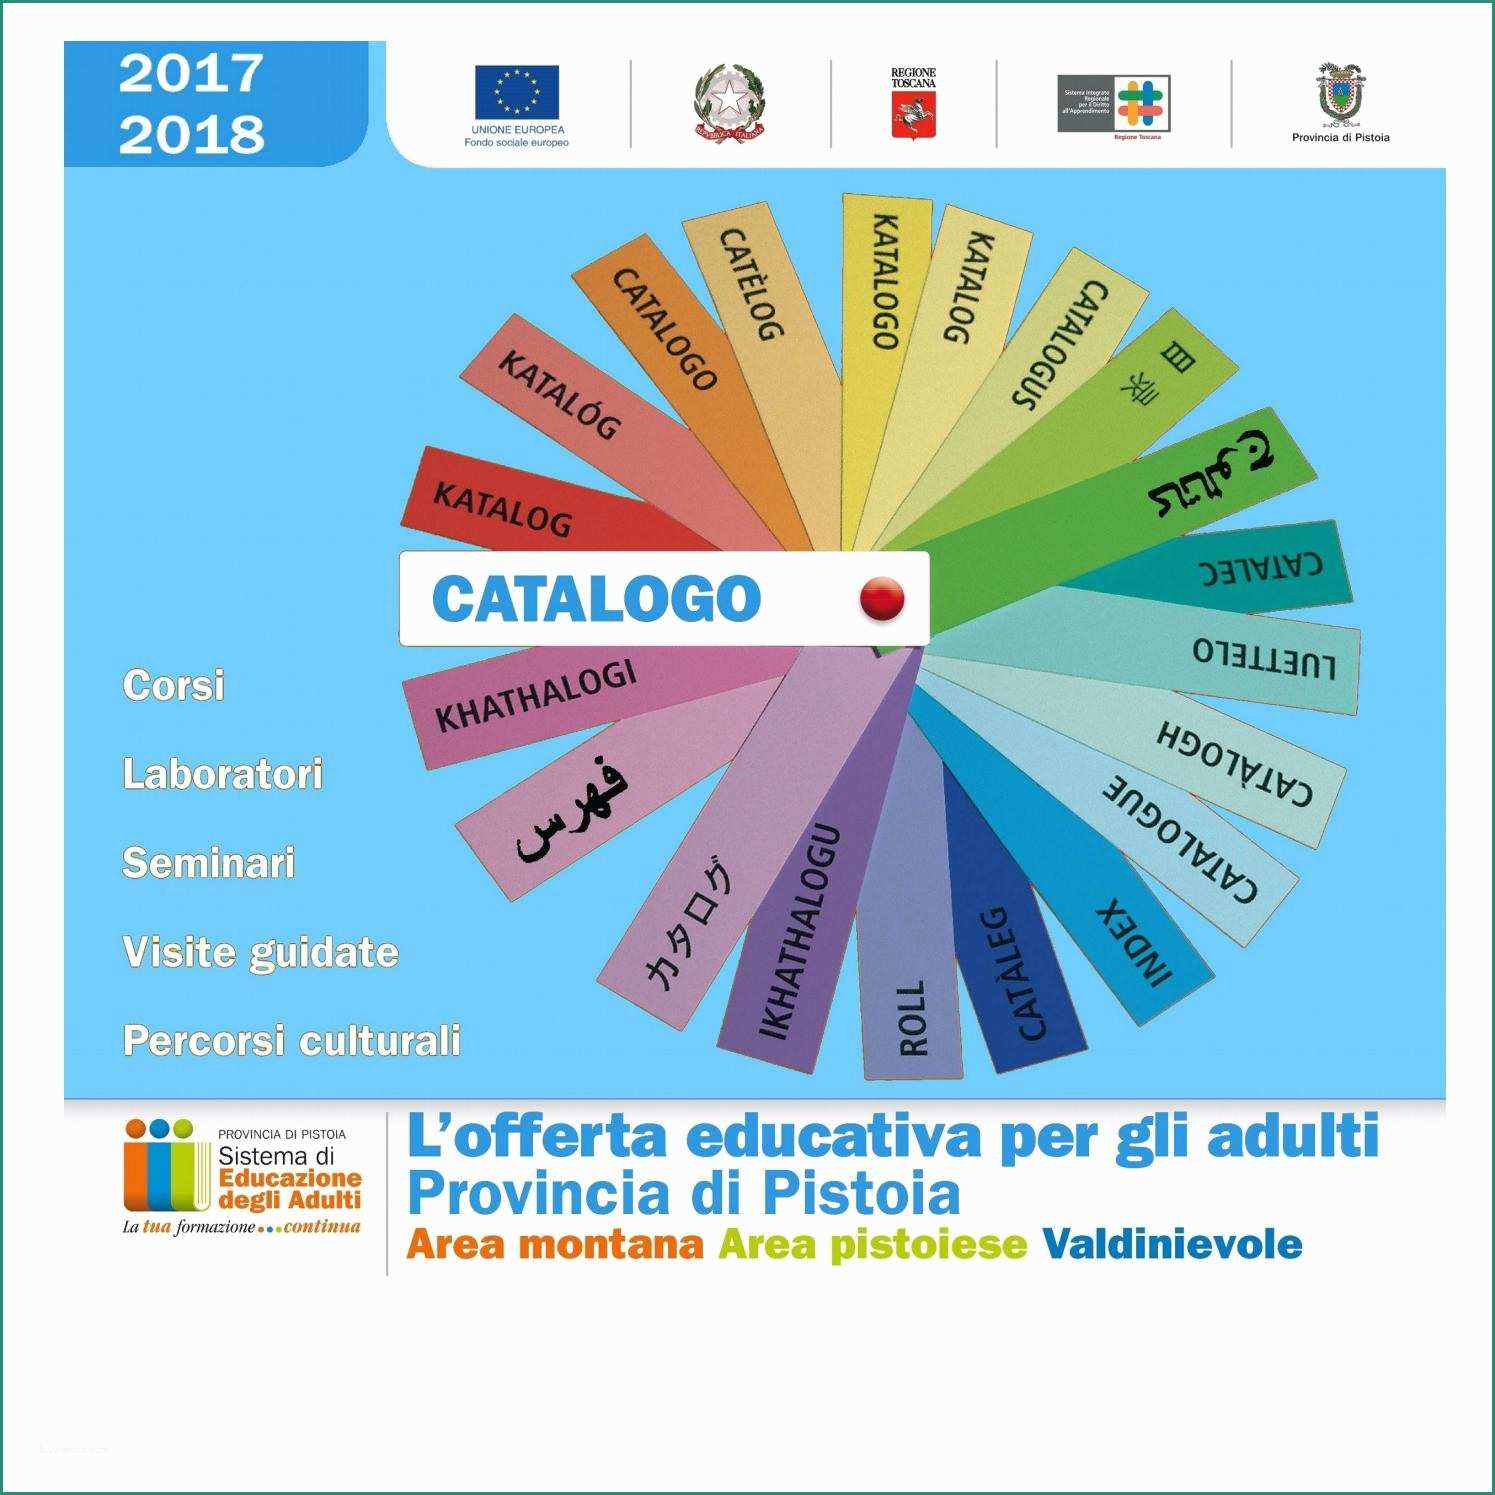 Lettino Massaggio Portatile Usato E Catalogo Eda 2017 2018 by Edapistoia issuu